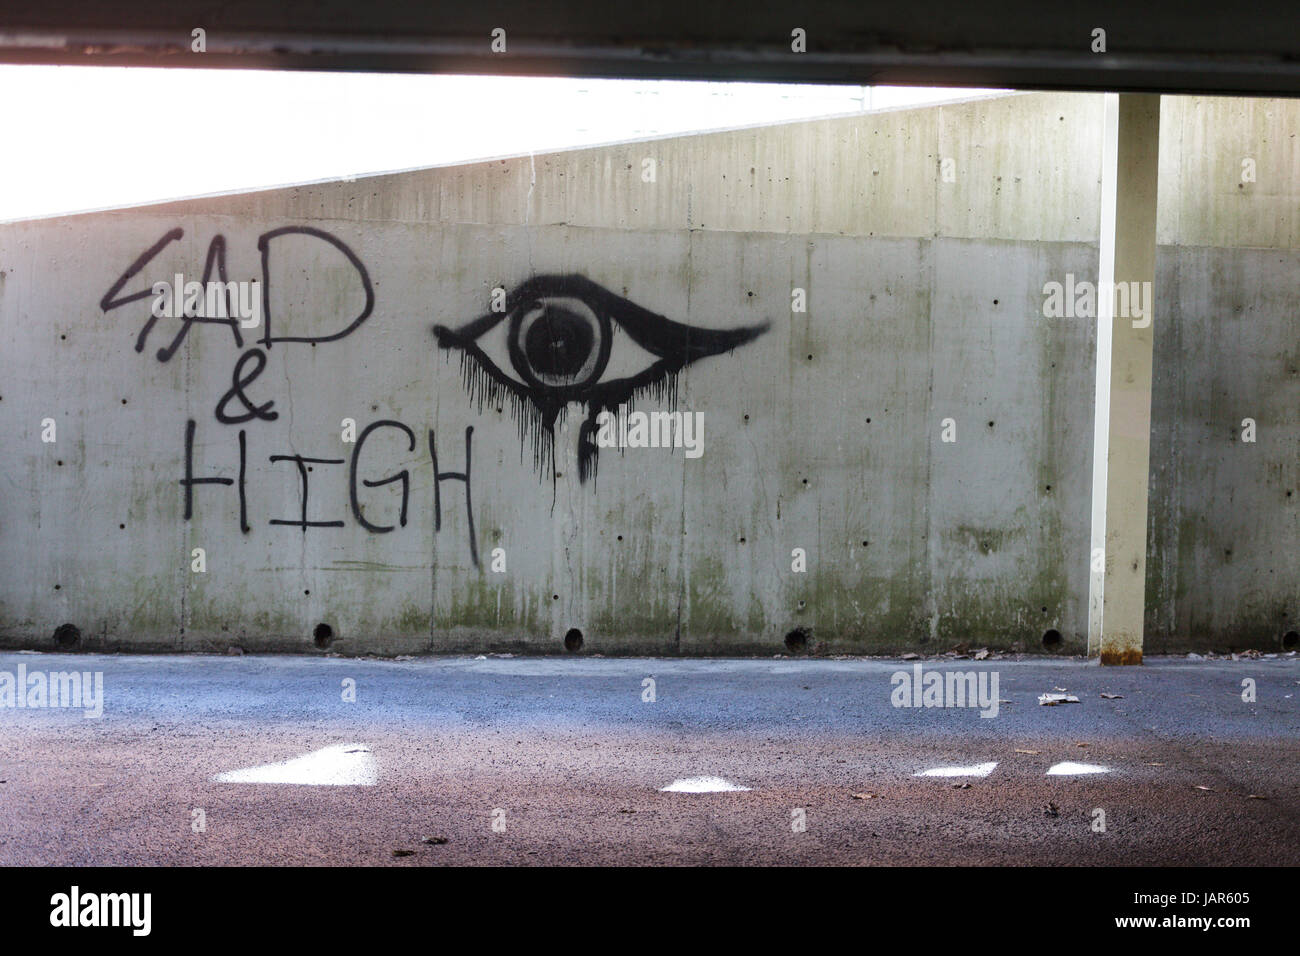 TROY, NEW YORK, Février 25, 2017 : des graffitis sur le mur d'un stationnement "ad et haute' peut être l'expression de la toxicomanie aux opiacés des USA. Banque D'Images